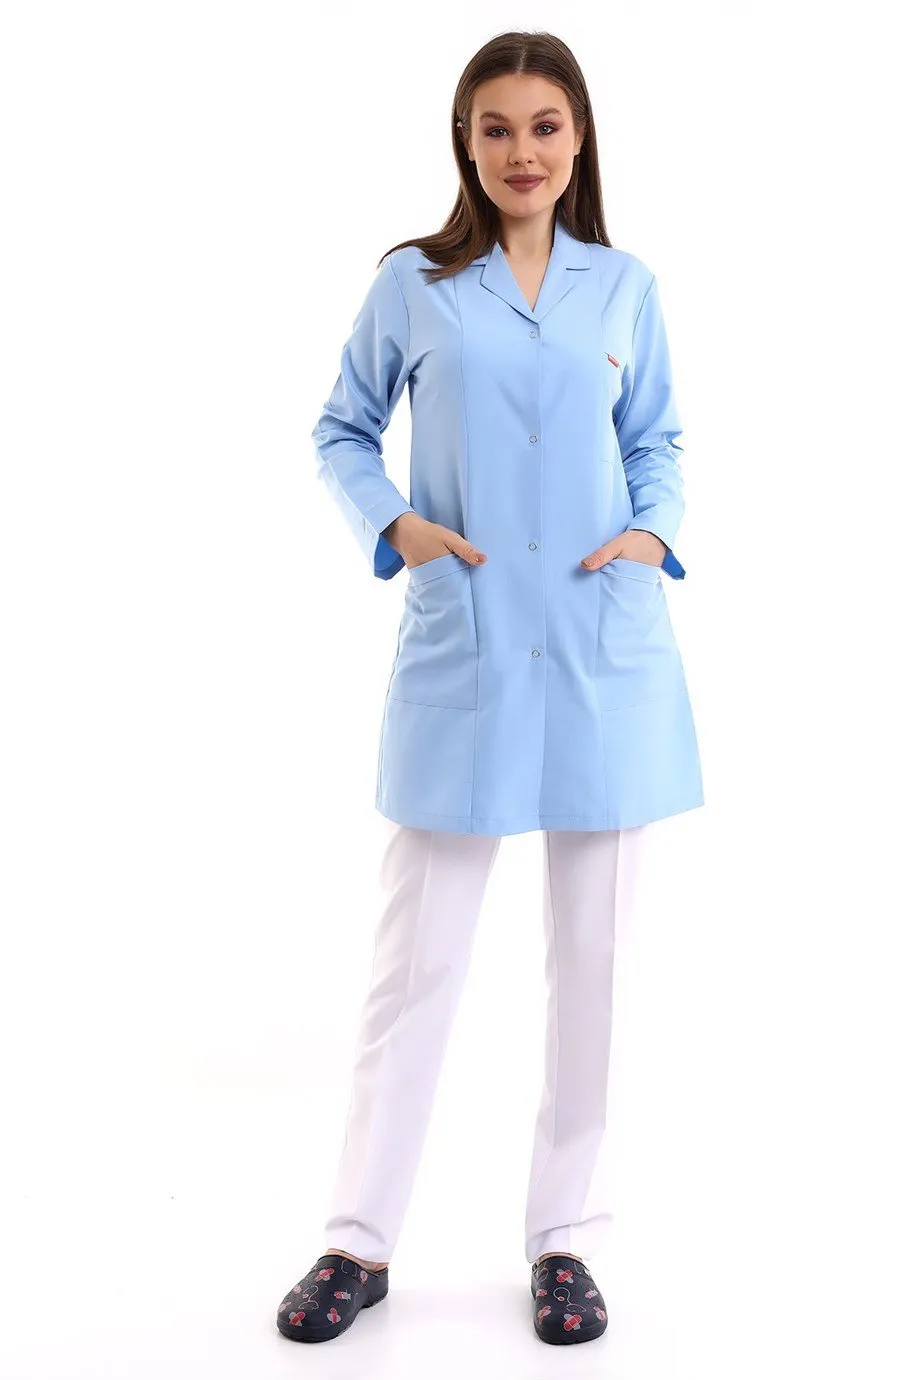 Doktor Öğretmen Kadın Önlük Ara Boy Ceket Yaka - 31 Açık Mavi